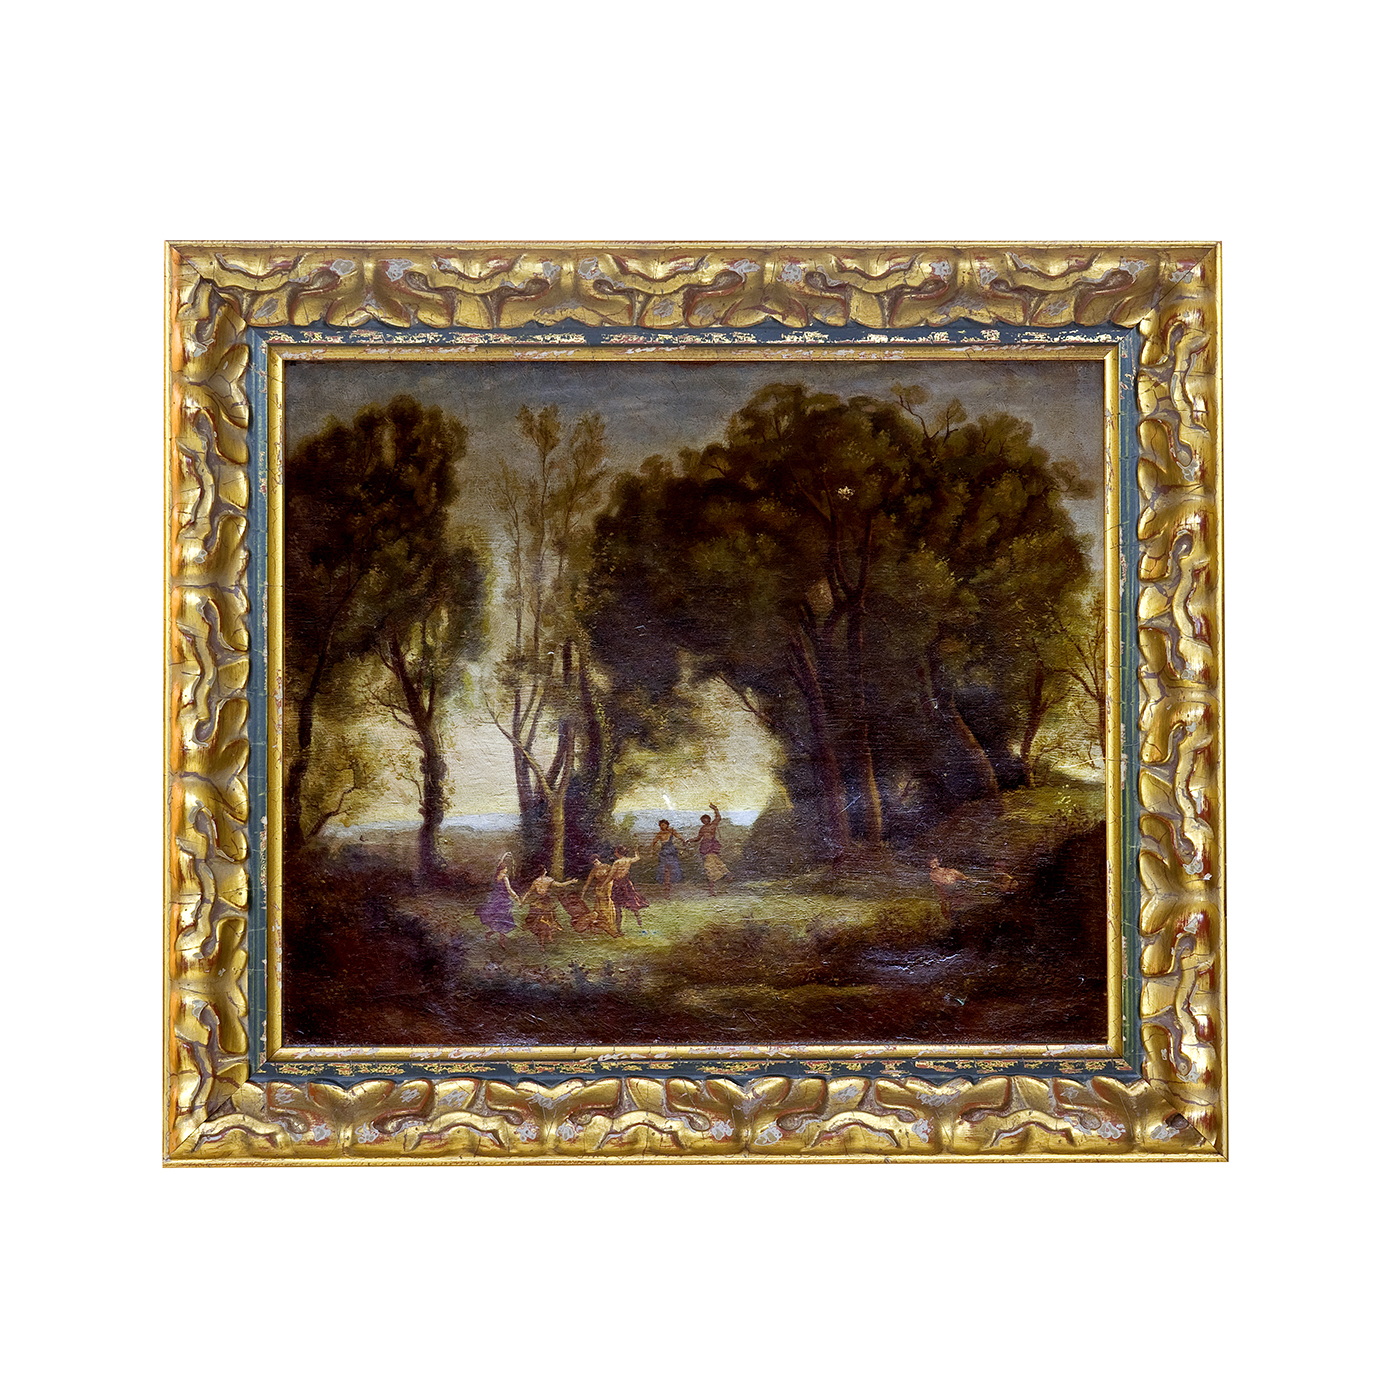 Attribué à Jean-Baptiste COROT. Huile sur toile. "Bacchanale dans la forêt".